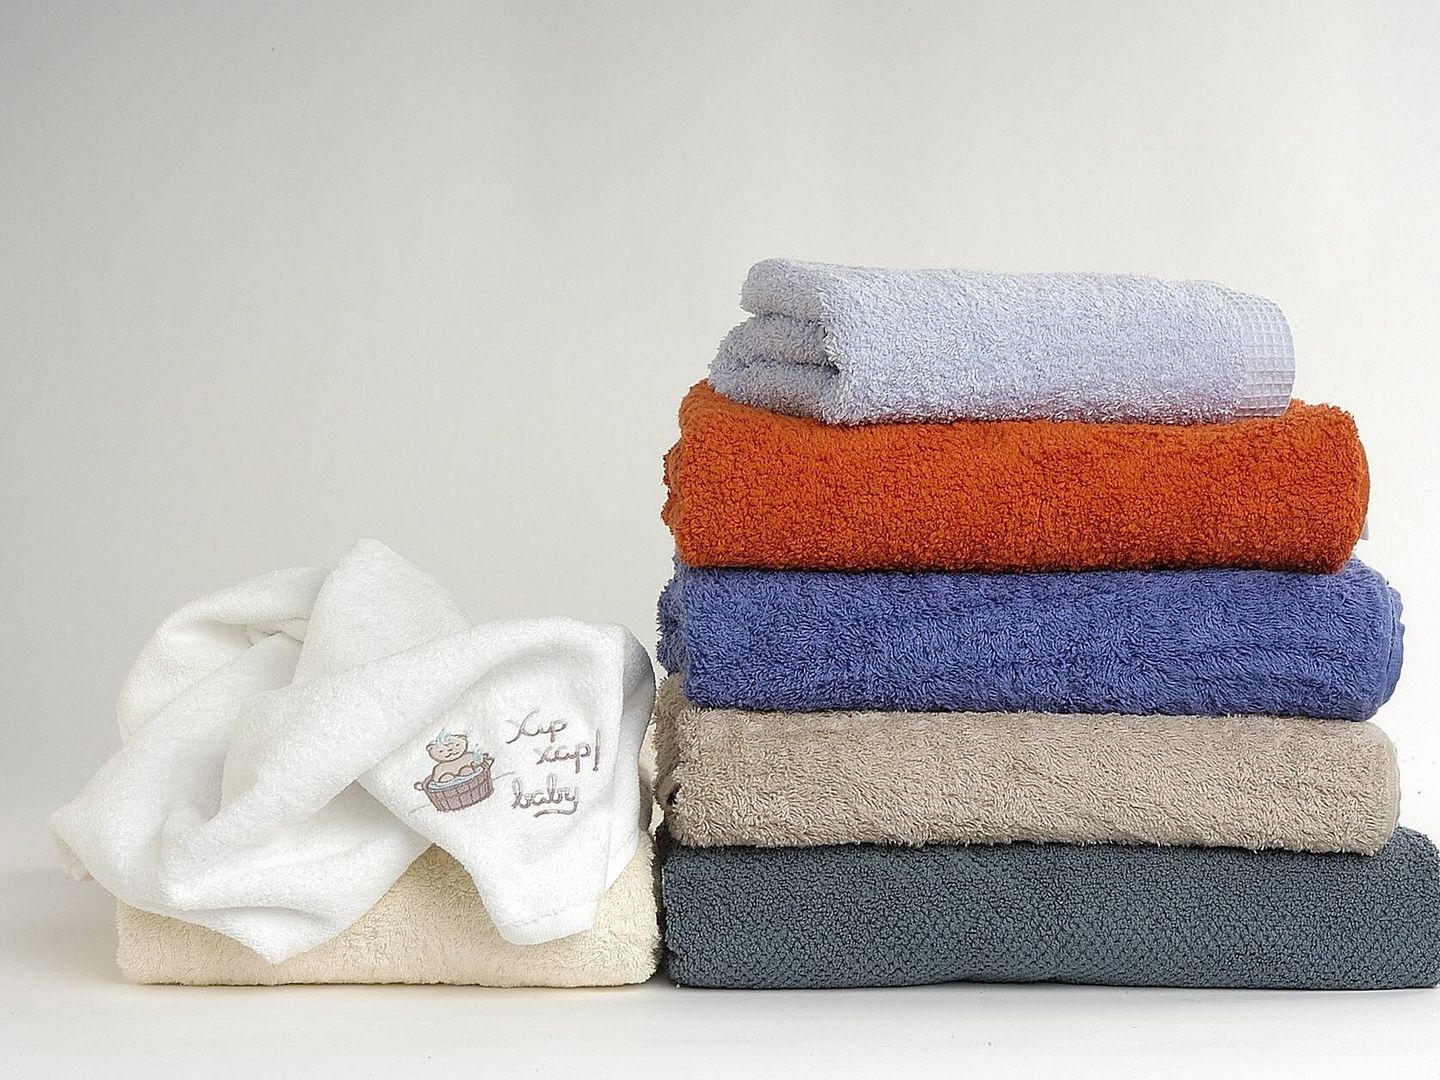 Conseguir que las toallas salgan esponjosas y perfumadas de la lavadora (Fuente: Pixabay)